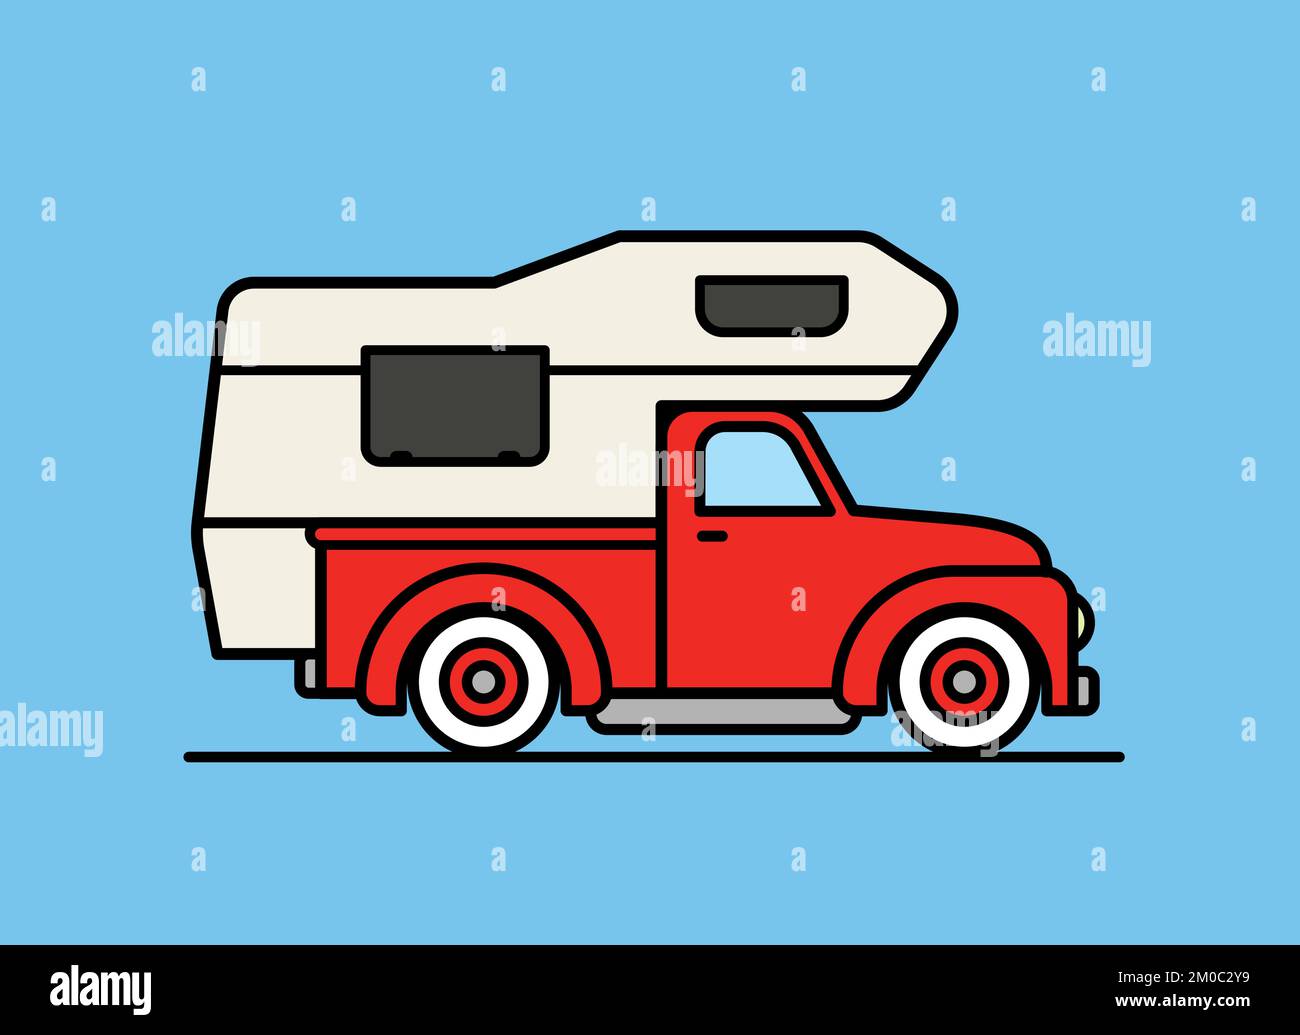 Caravan-illustration am besten für wohnmobile und outdoor-industrie geeignet,  vektor-weißer hintergrund